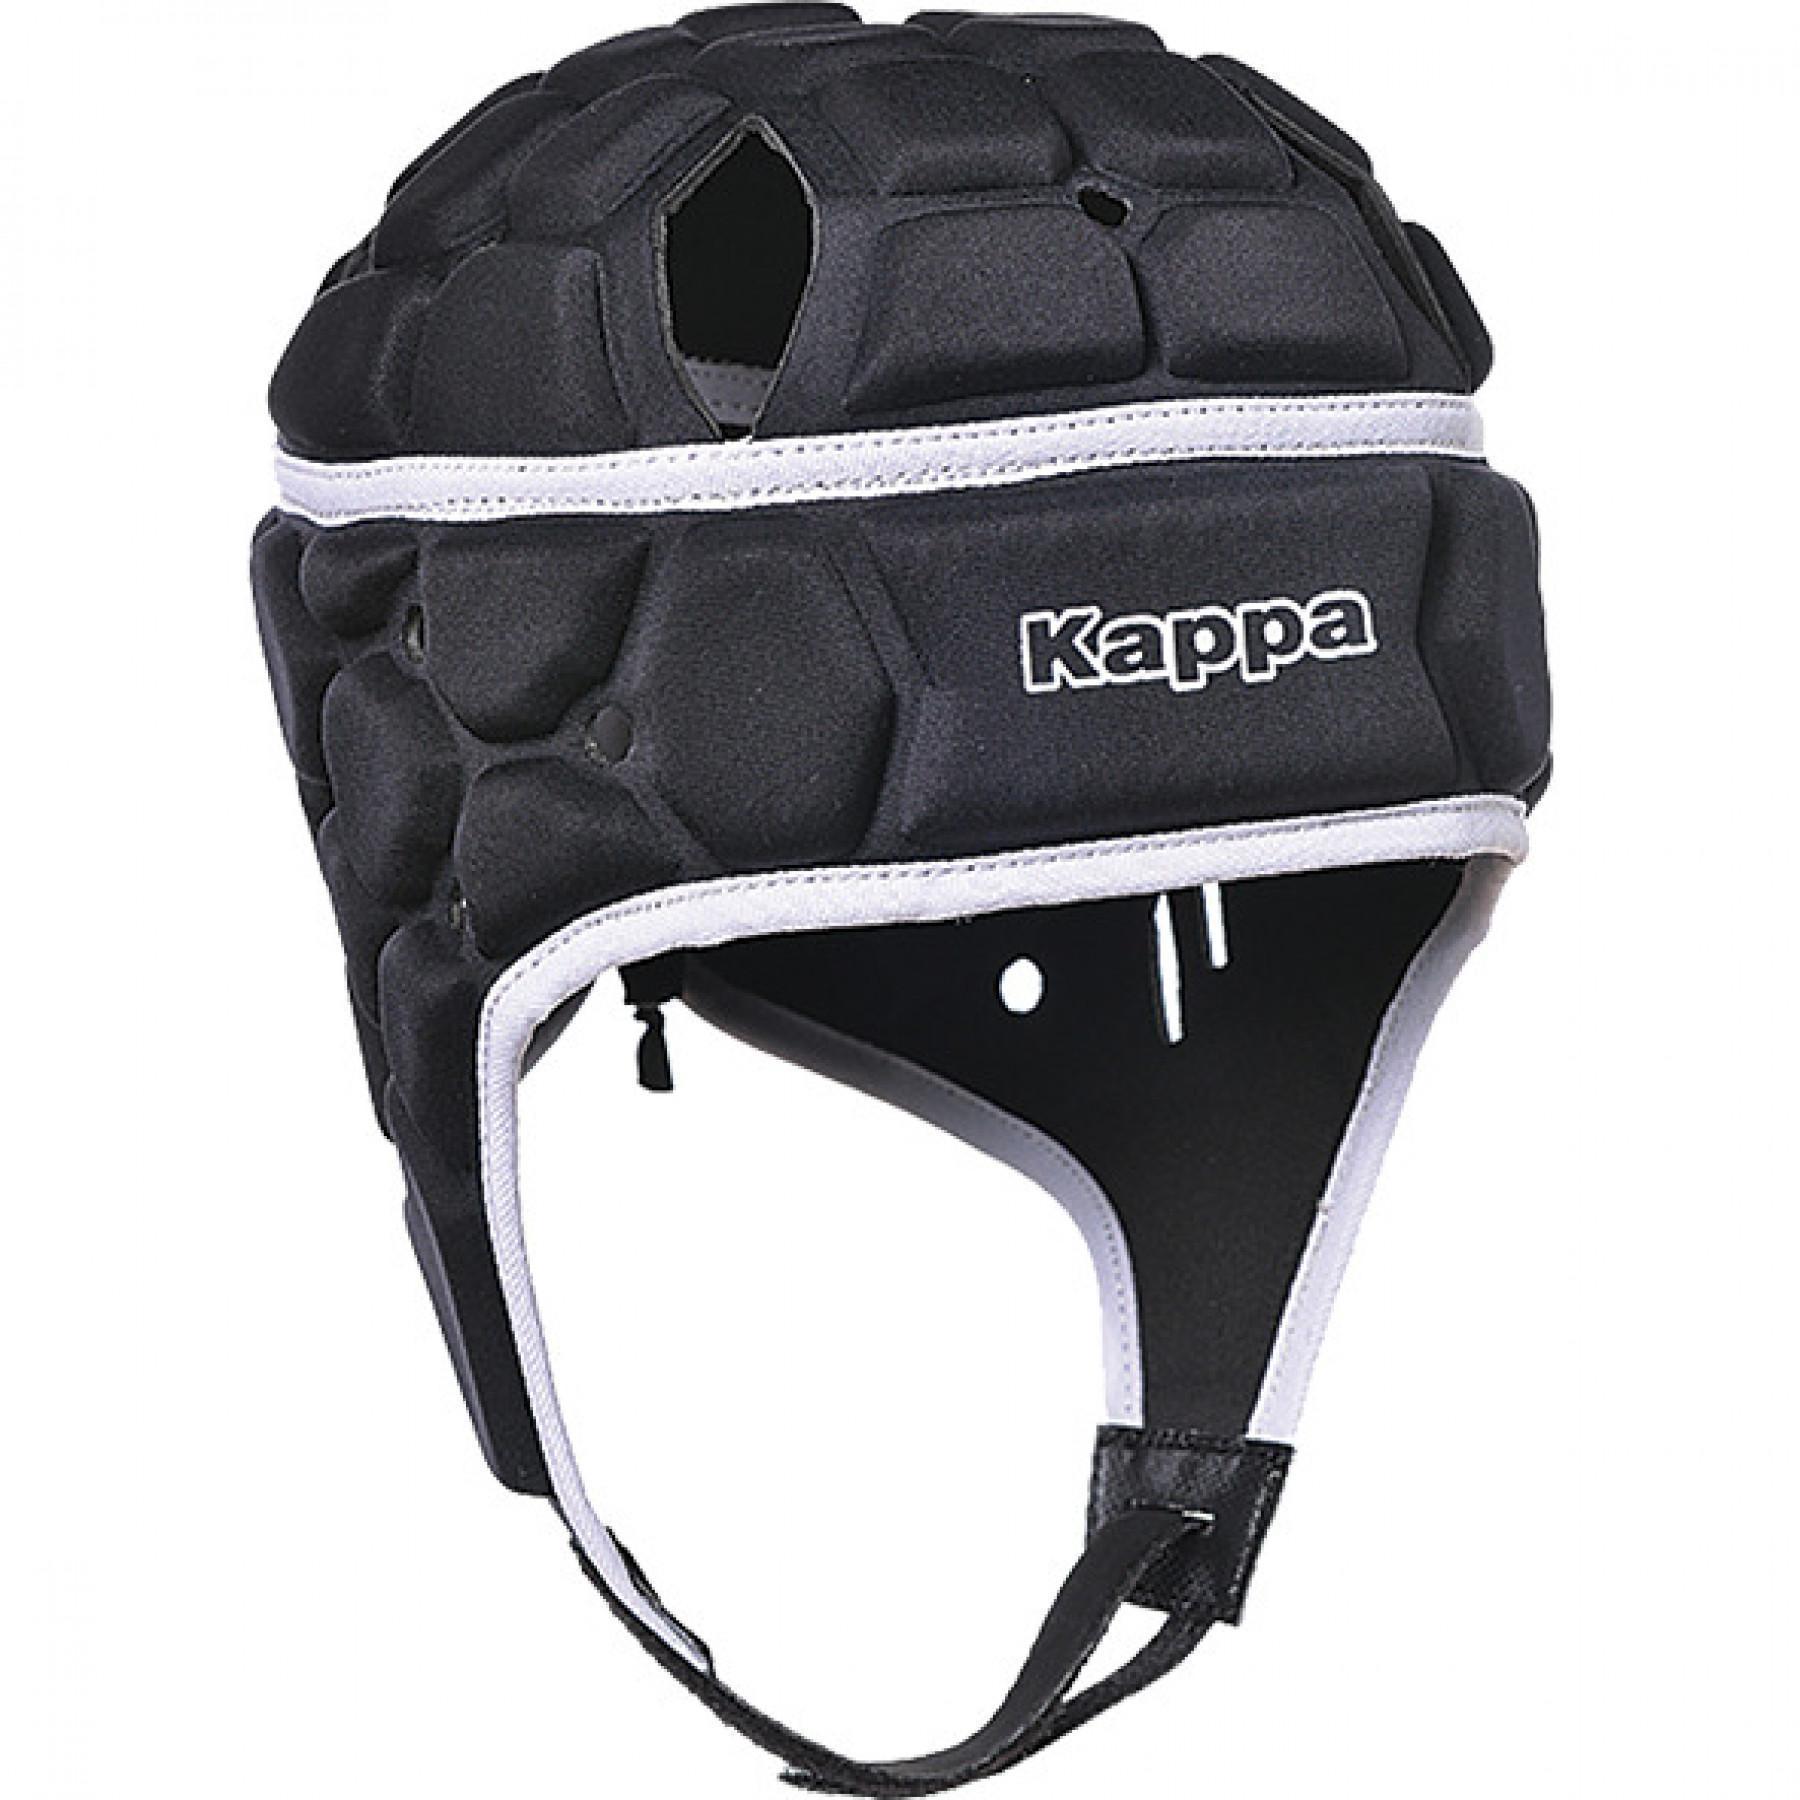 Rugby helmet Kappa Trimo